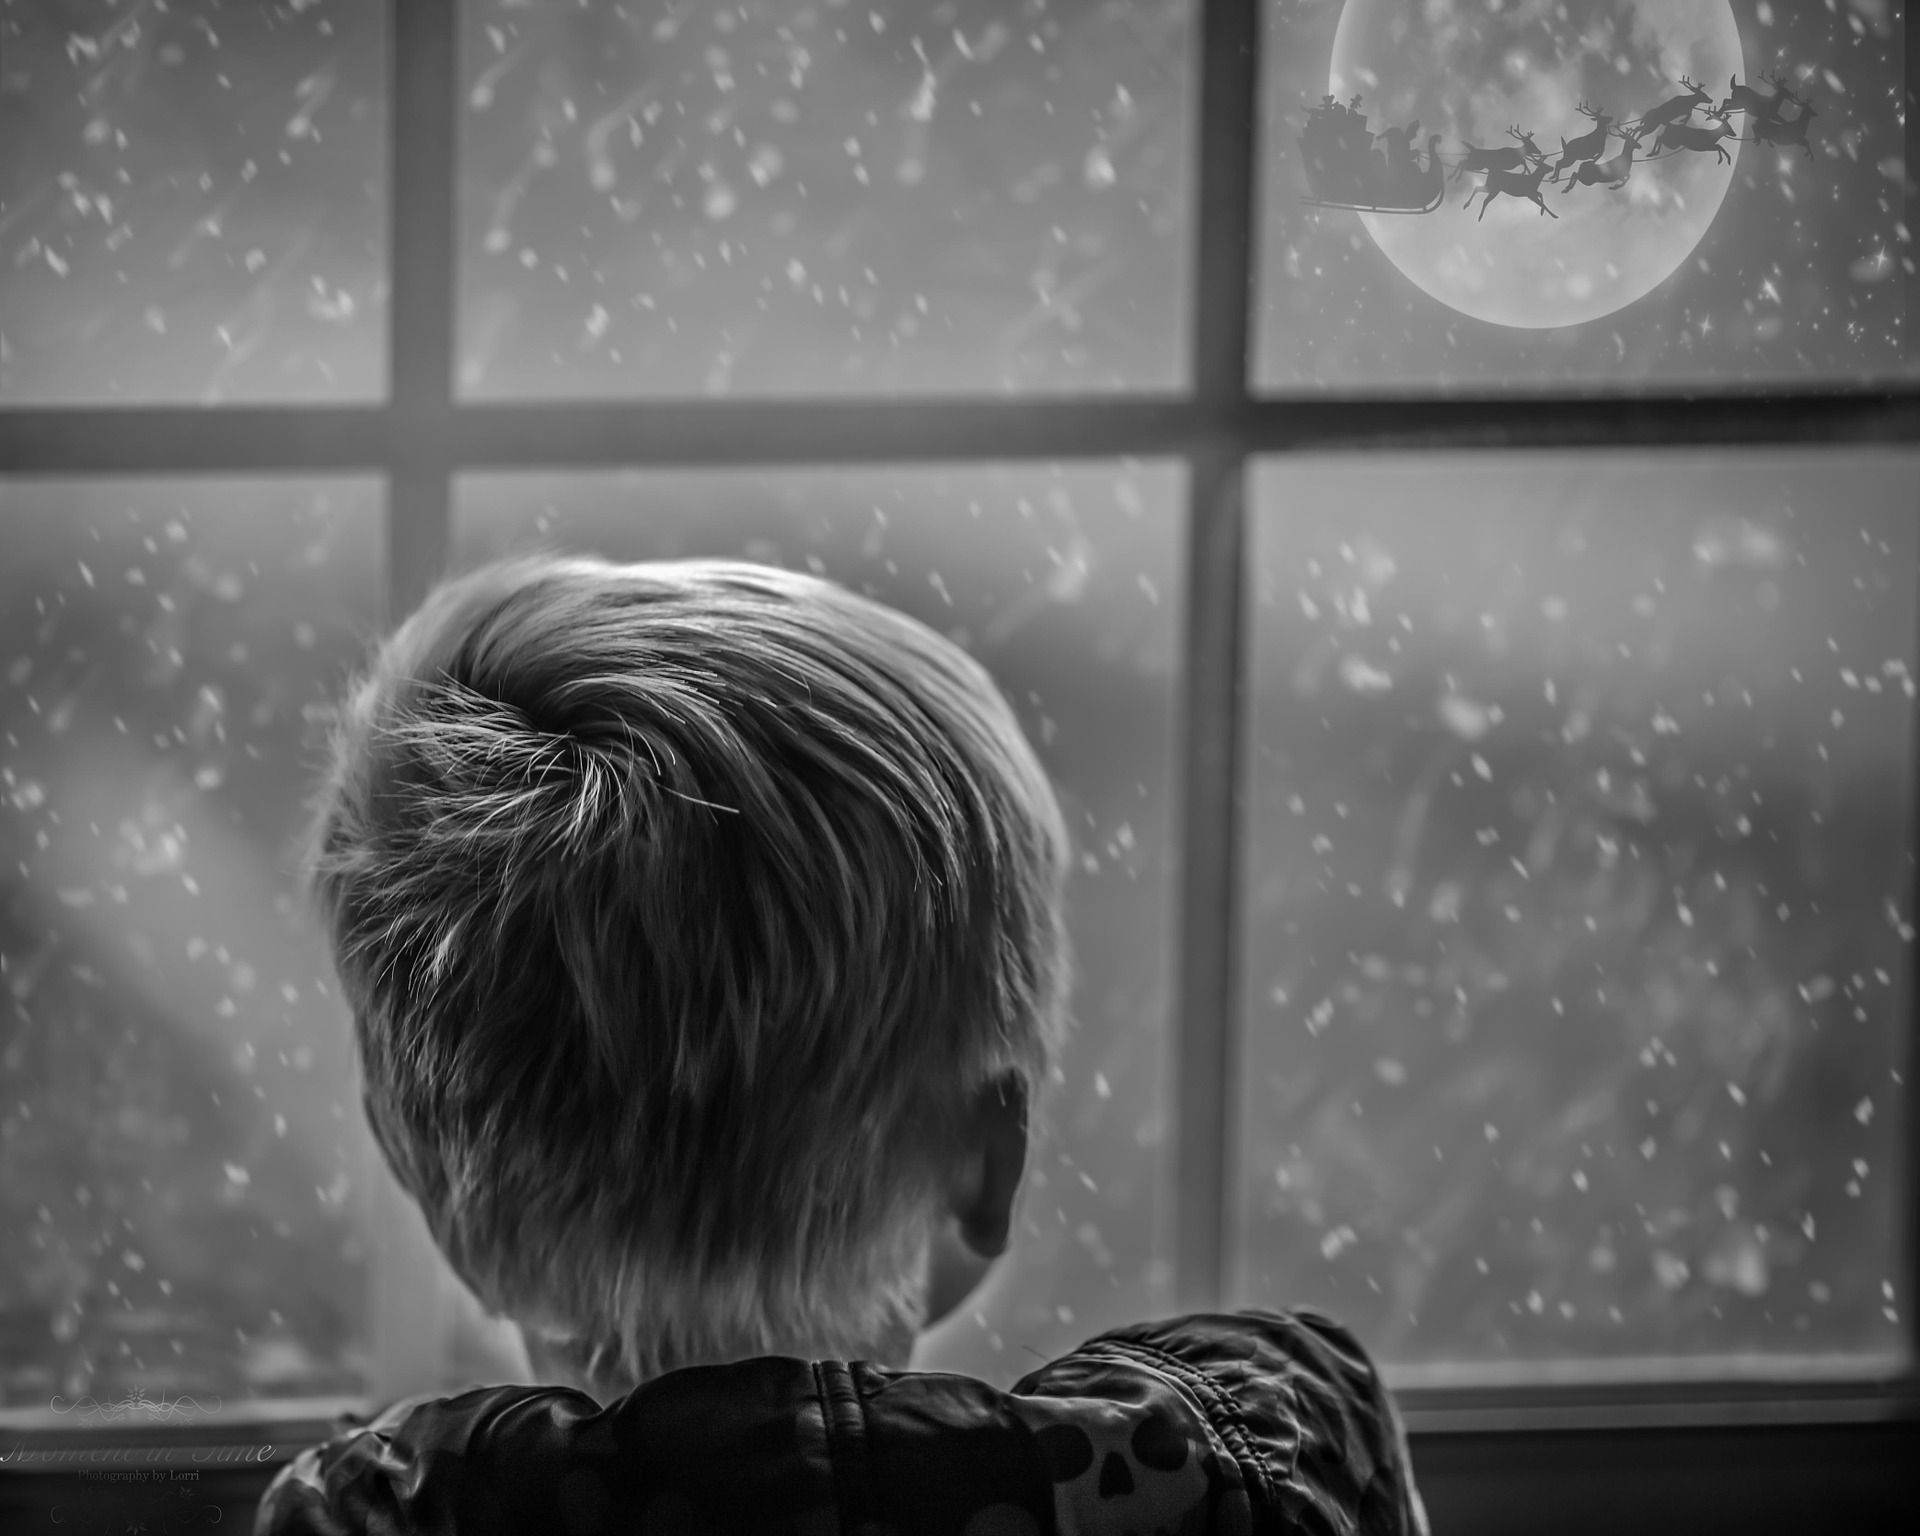 Weiße Weihnachten - ein Kindheitstraum oder noch Realität? - Environition